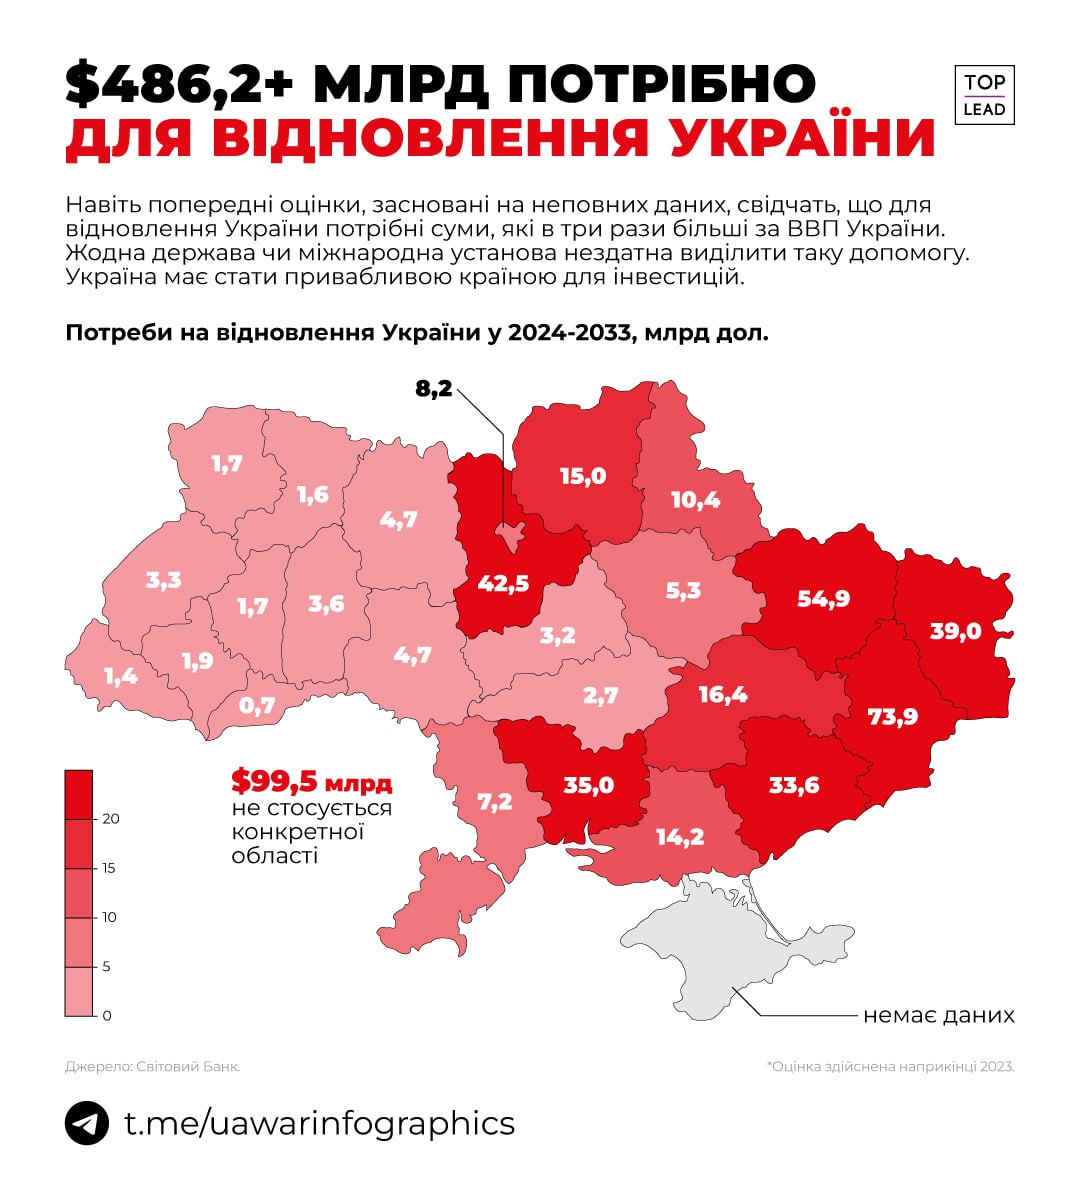 Для відбудови України вже потрібна сума, що втричі більша за ВВП України